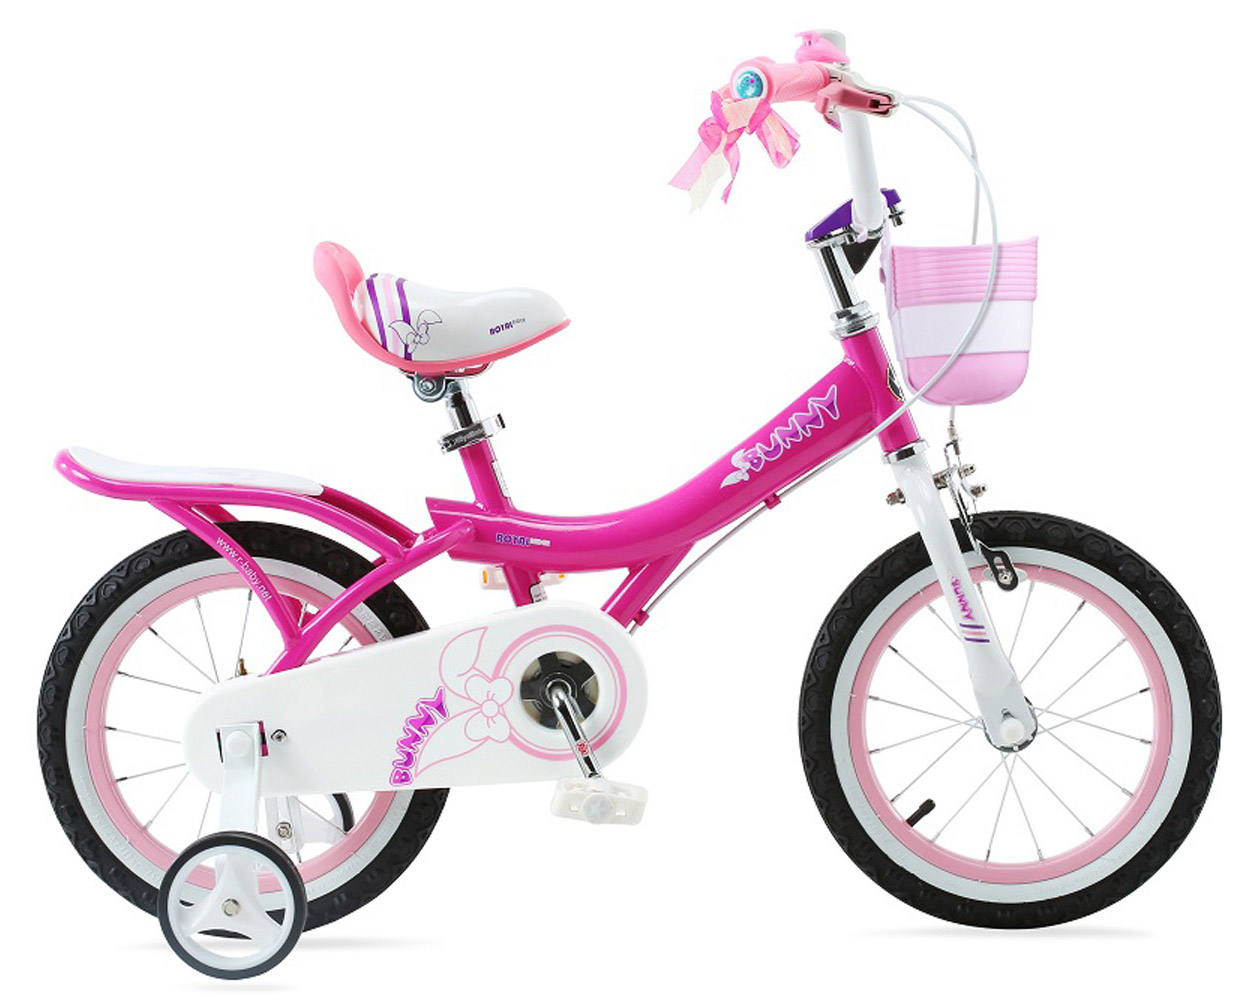  Отзывы о Детском велосипеде Royal Baby Bunny Girl 16" (2020) 2020